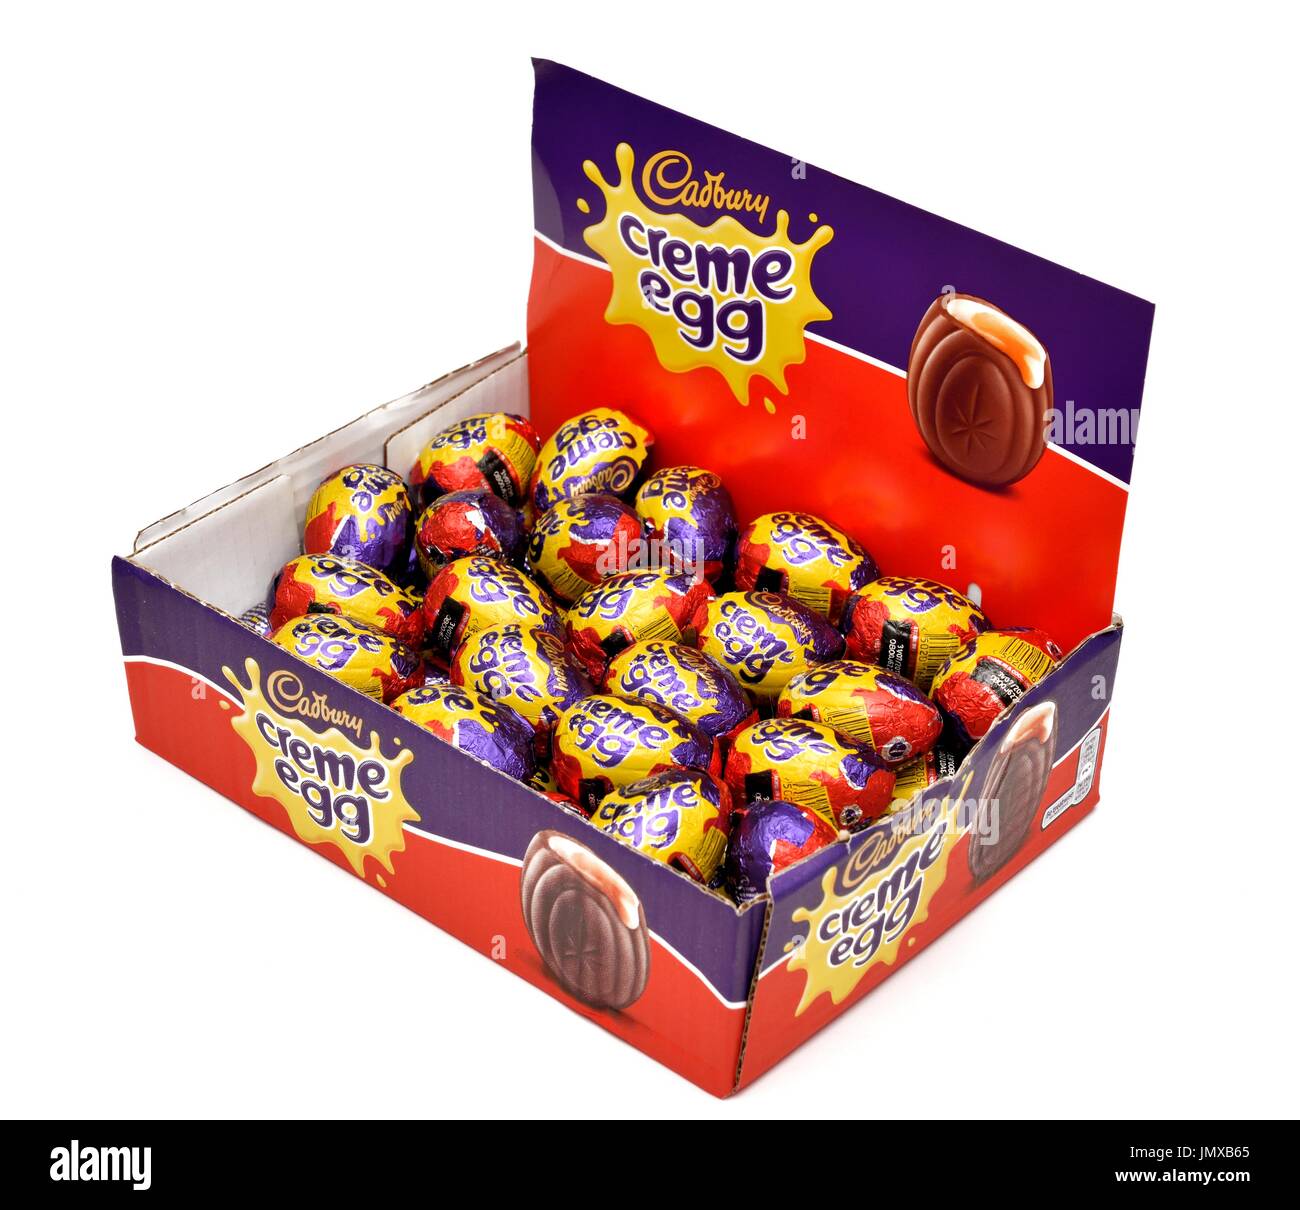 Cadburys oeufs crème boîte de détail pack Banque D'Images